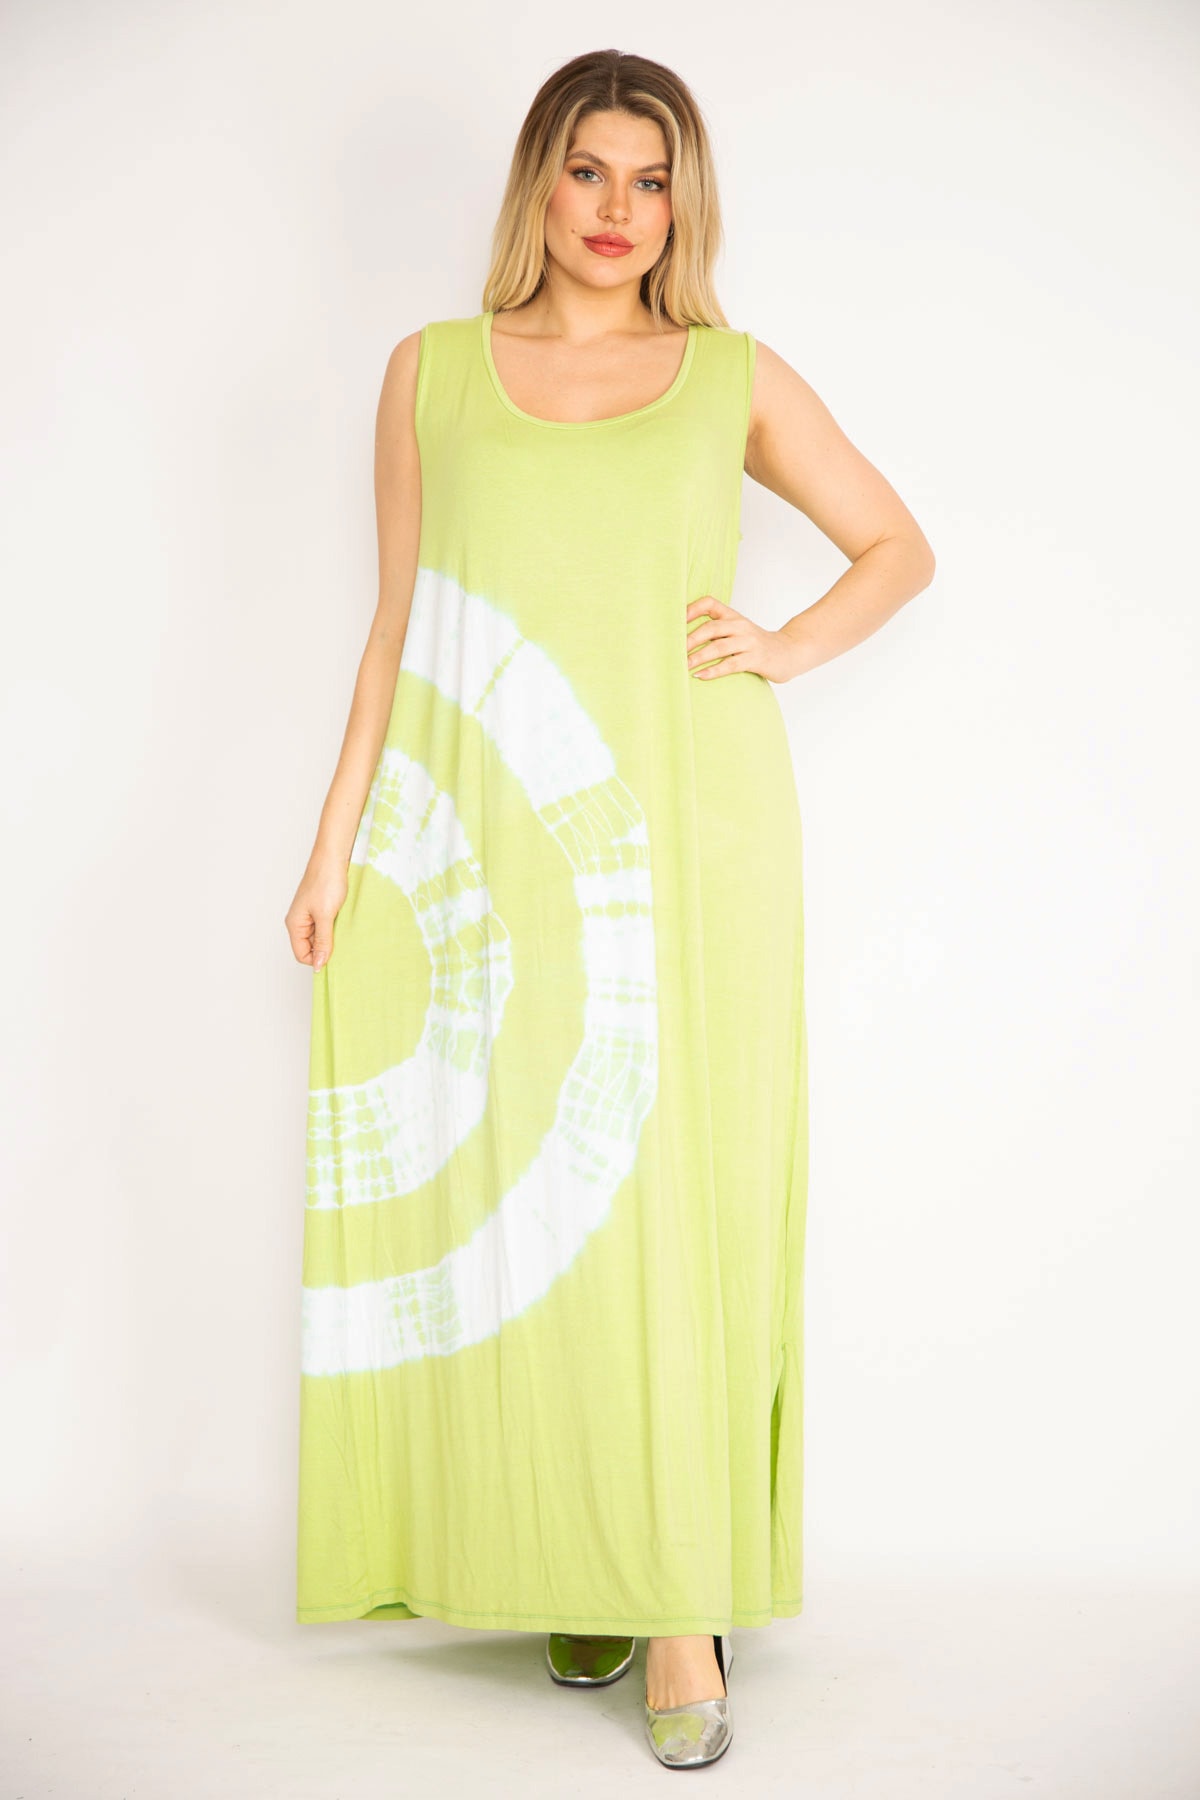 Şans Women's Green Tie Dye Patterned Long Dress with Side Slits